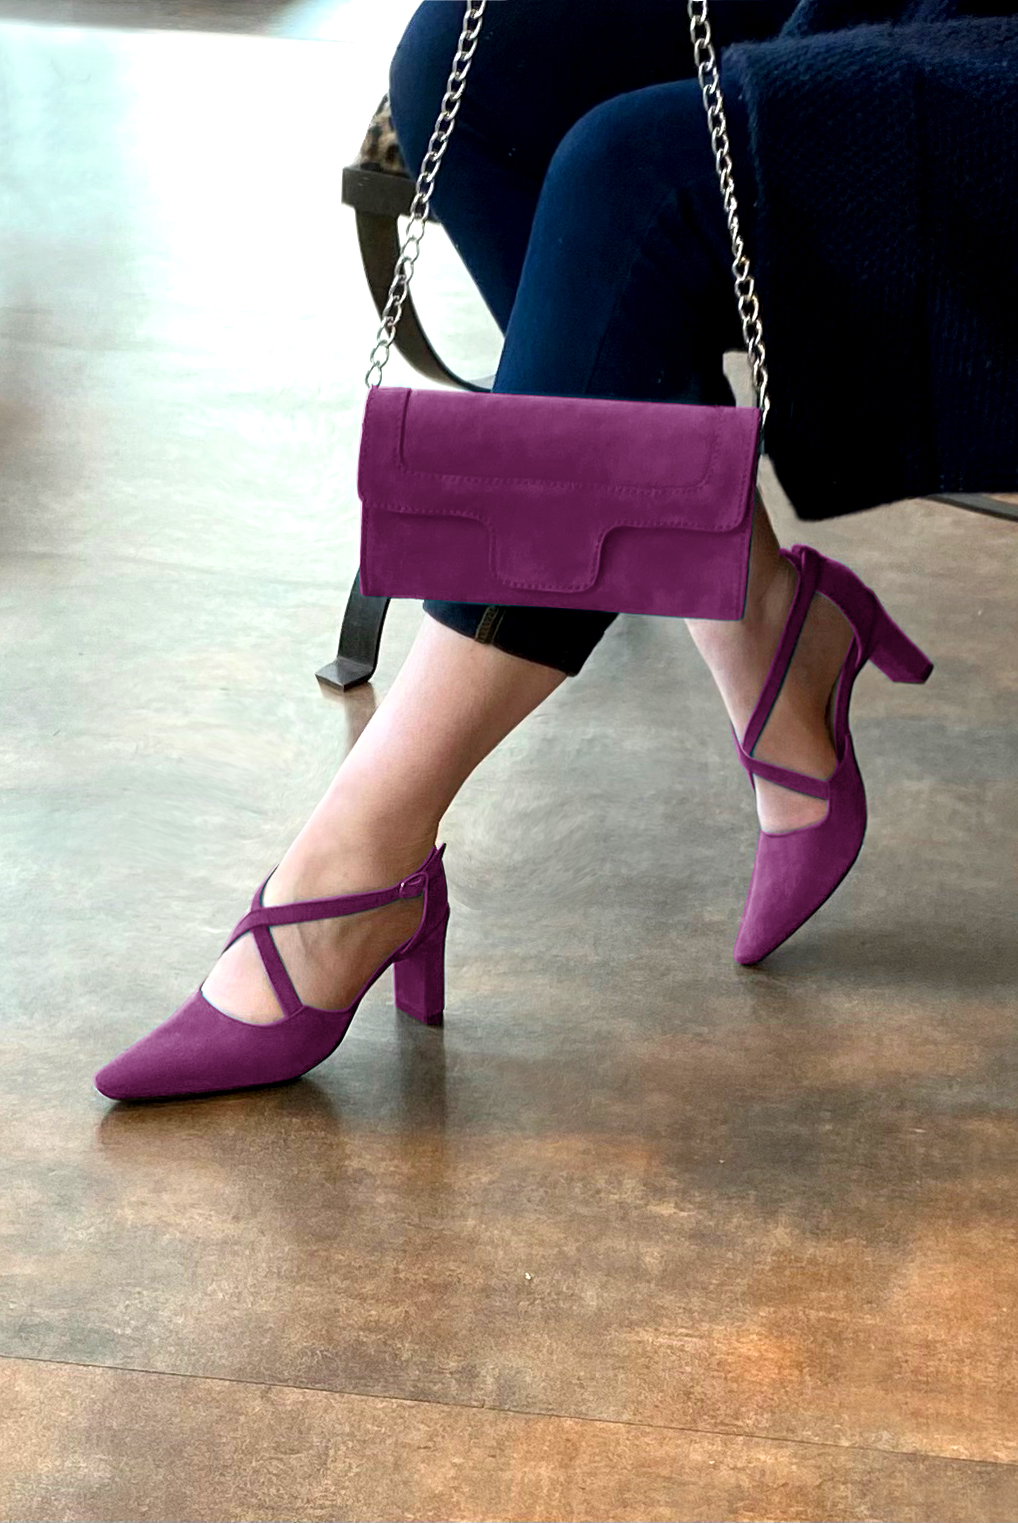 Chaussure femme à brides : Chaussure côtés ouverts brides croisées couleur violet myrtille. Bout effilé. Talon haut virgule. Vue porté - Florence KOOIJMAN